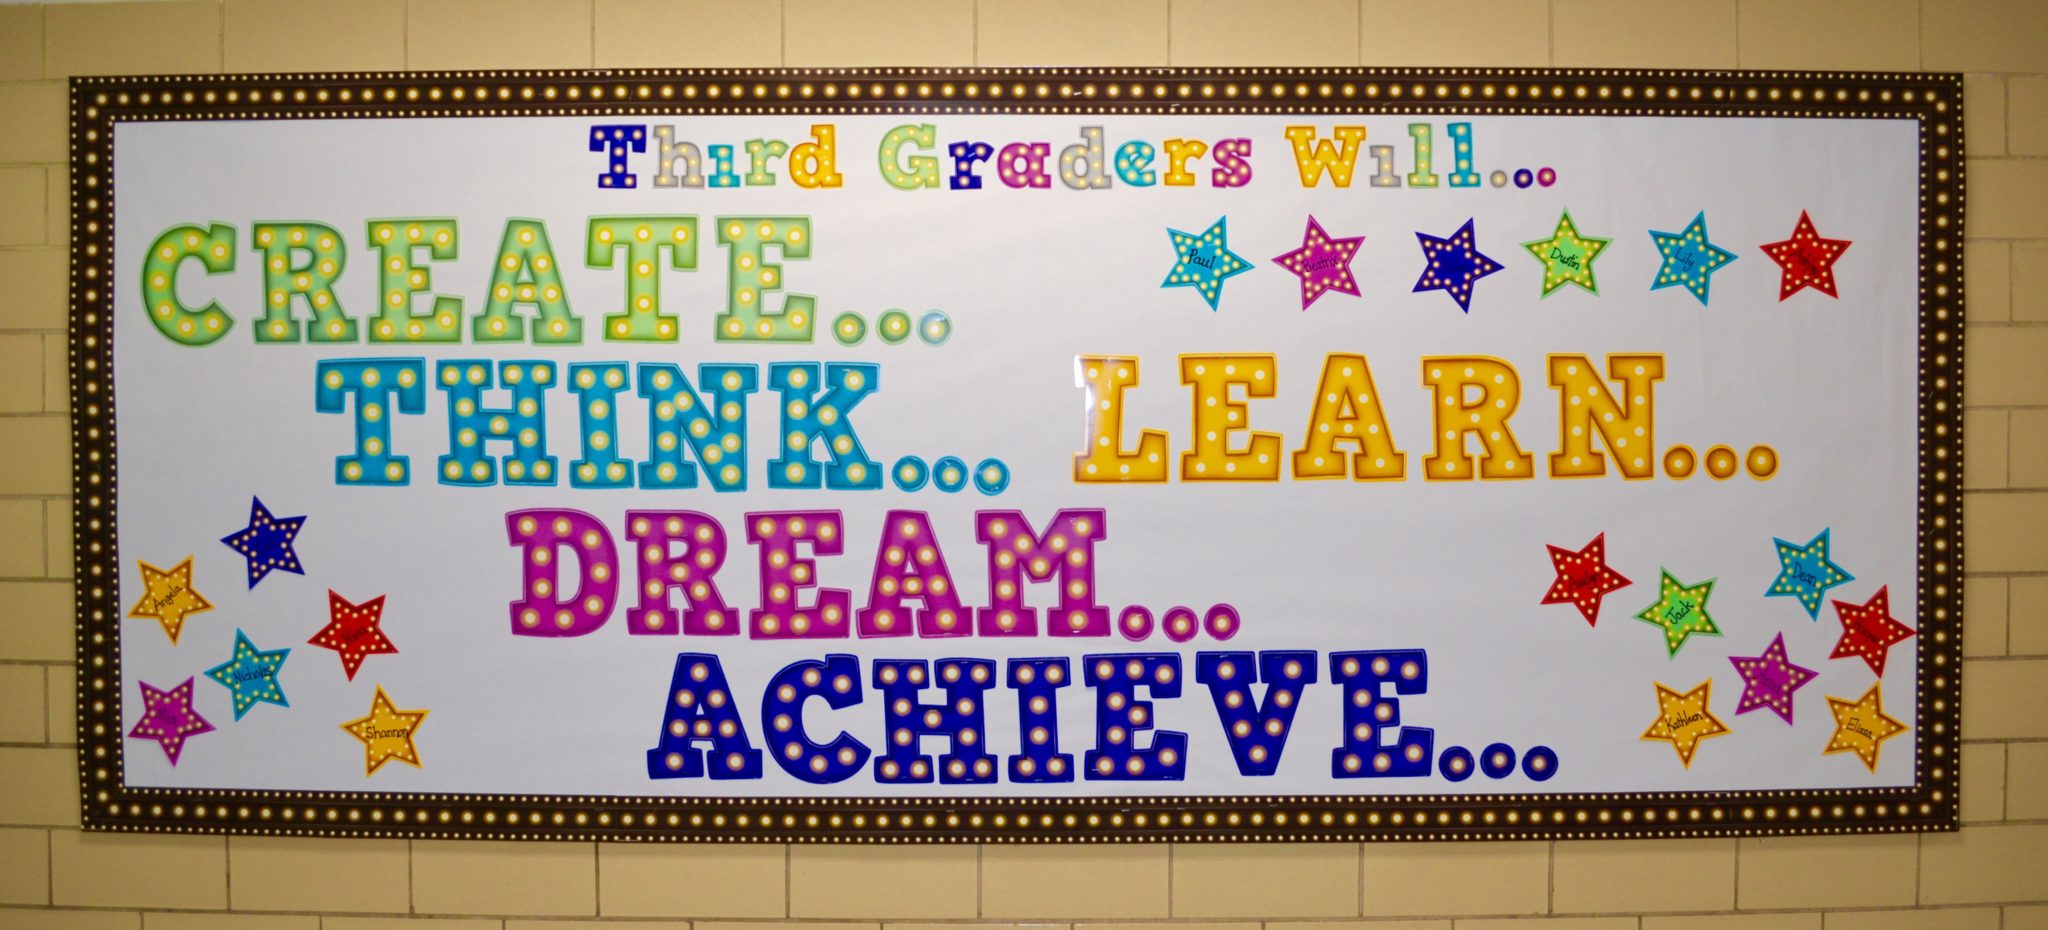 Clarke school bulletin board- create think dream achieve learn